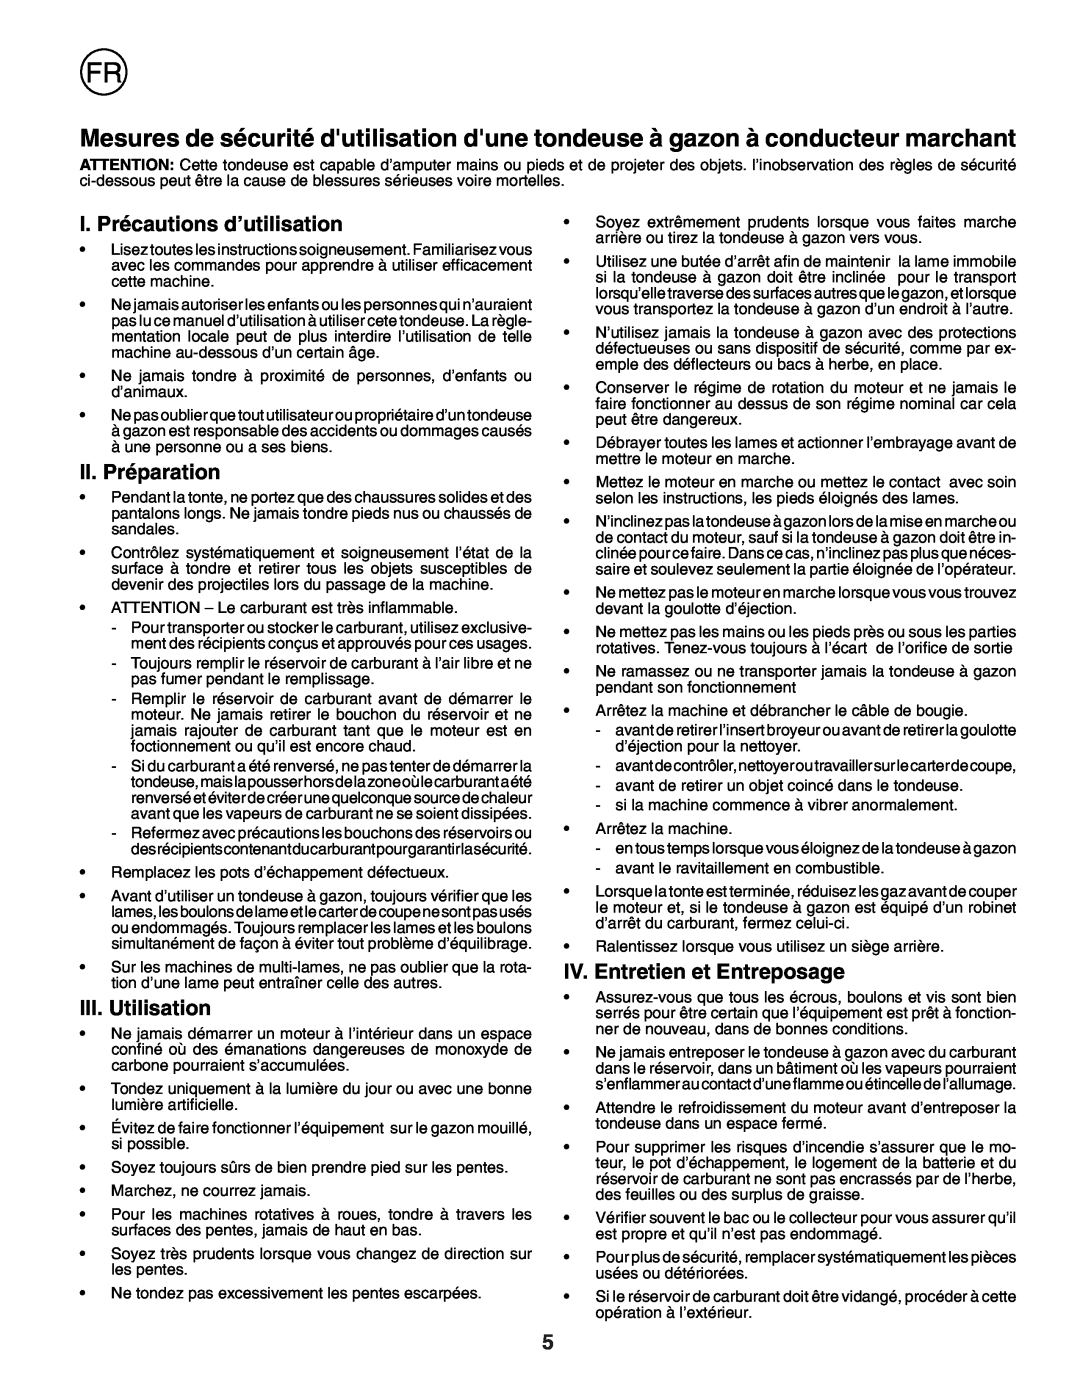 Husqvarna R152SVBBC I. Précautions d’utilisation, II. Préparation, III. Utilisation, IV. Entretien et Entreposage 